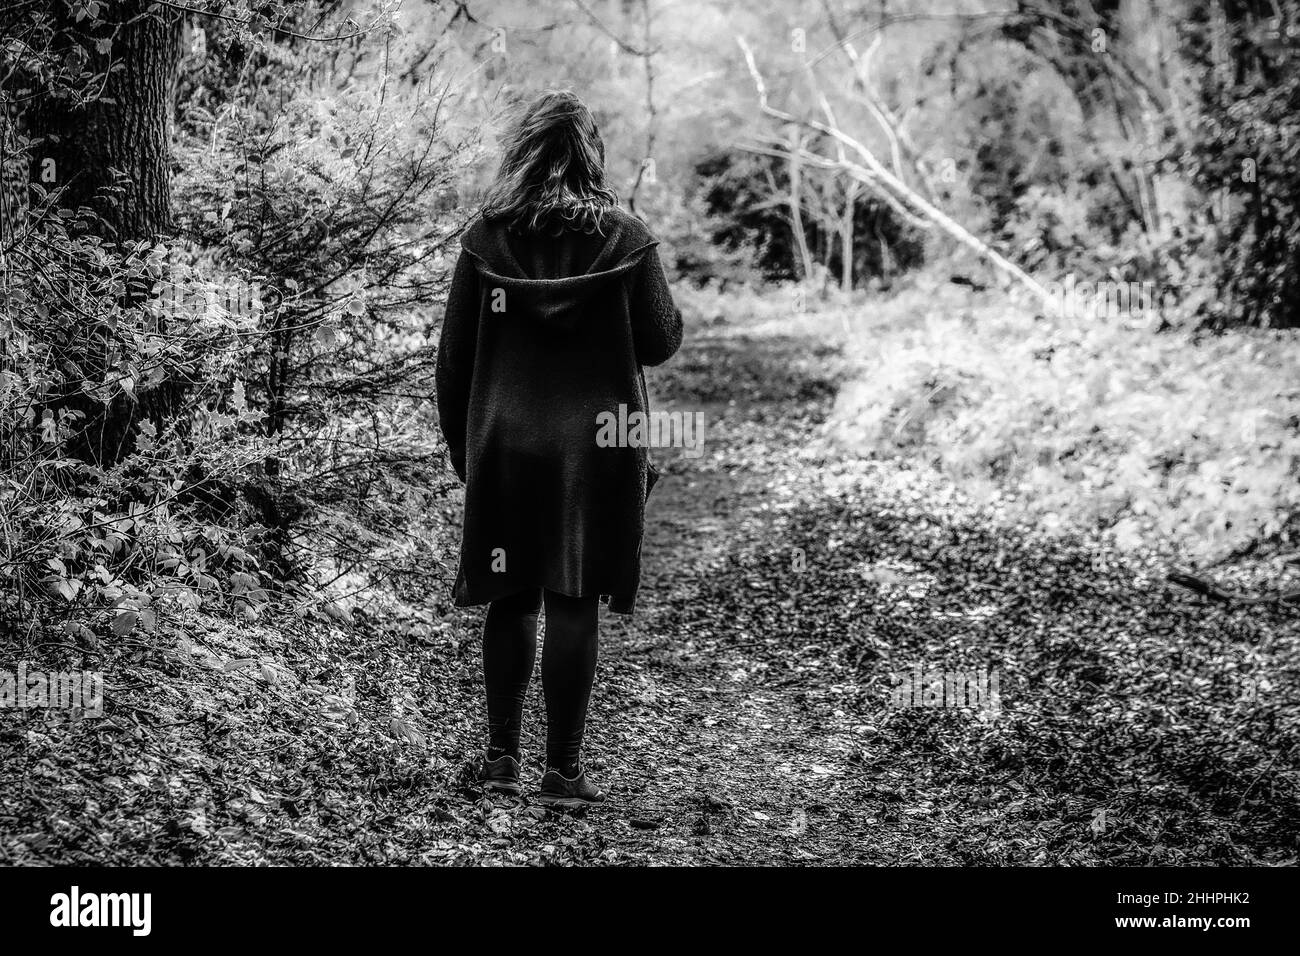 Moody geheimnisvolles Bild einer Frau, die in einem S/W-Ton durch einen schlammigen Pfad in einem leeren Wald geht, aufgenommen im Scadbury Park, 11.. Februar 2018 Stockfoto